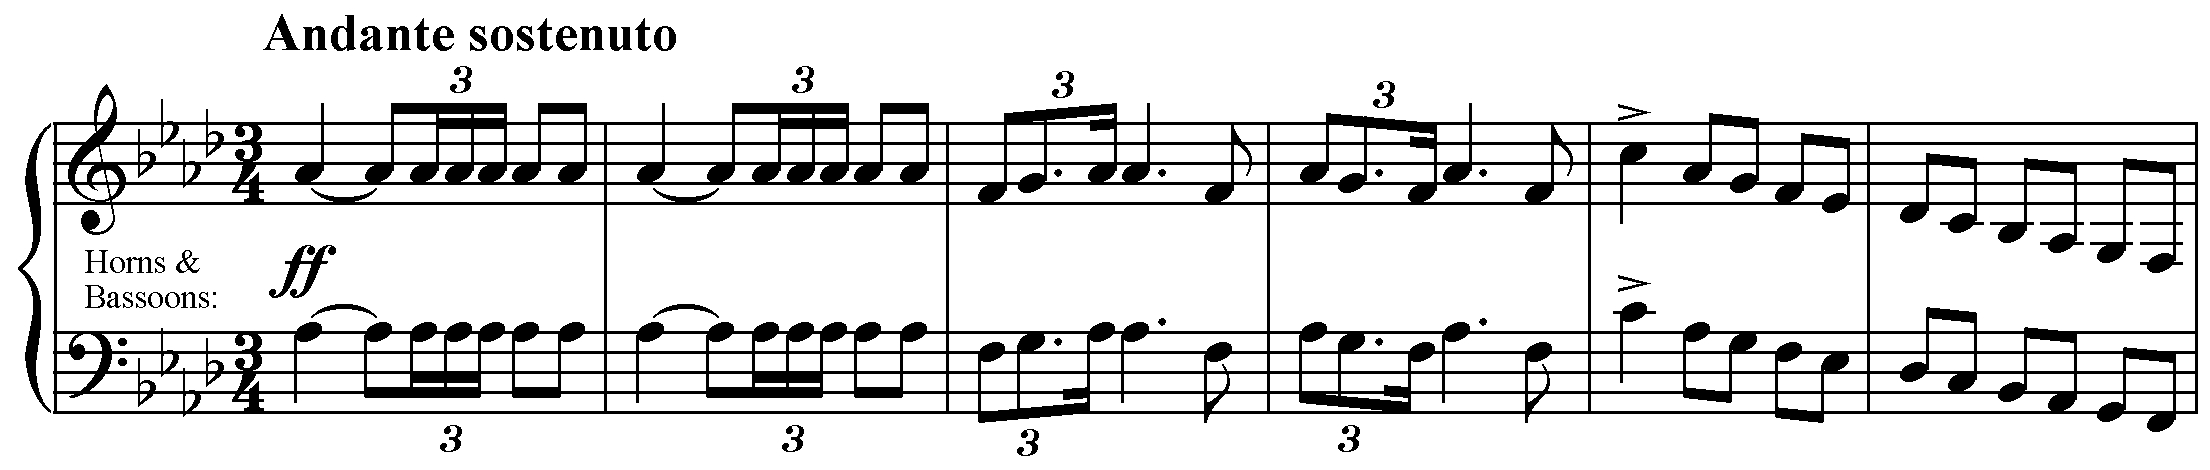 Tchaikovsky: Symphony No. 1, mvt. 1, meas. 1 - 6.